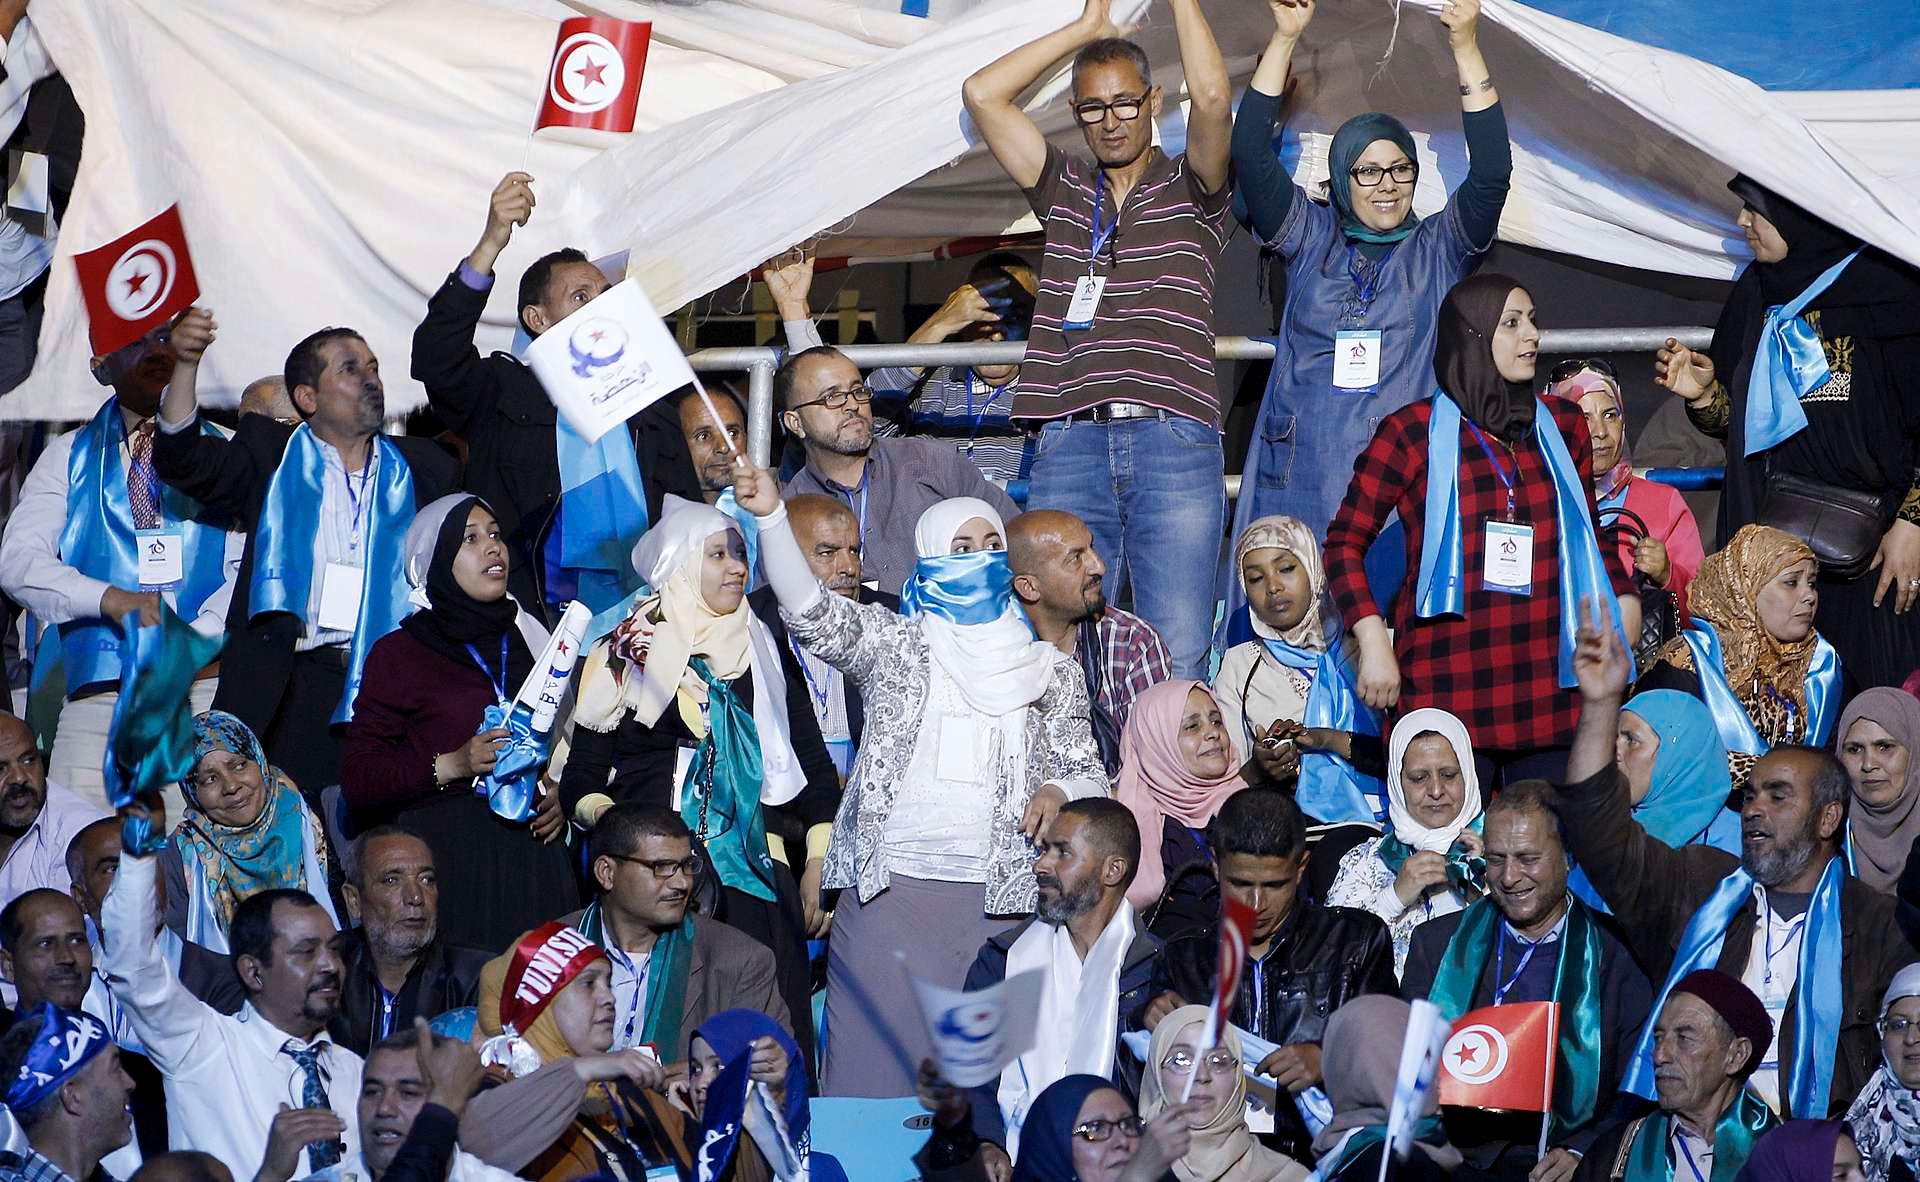 Entusiastiske medlemmer og tilhengere av det moderate, islamske partiet Ennahda i forbindelse med partiets kongress i Tunis by i forrige uke. Ytringsfrihet har vært en partiets viktigste kampsaker siden starten etter Jasmin-revolusjonen høsten 2010 .